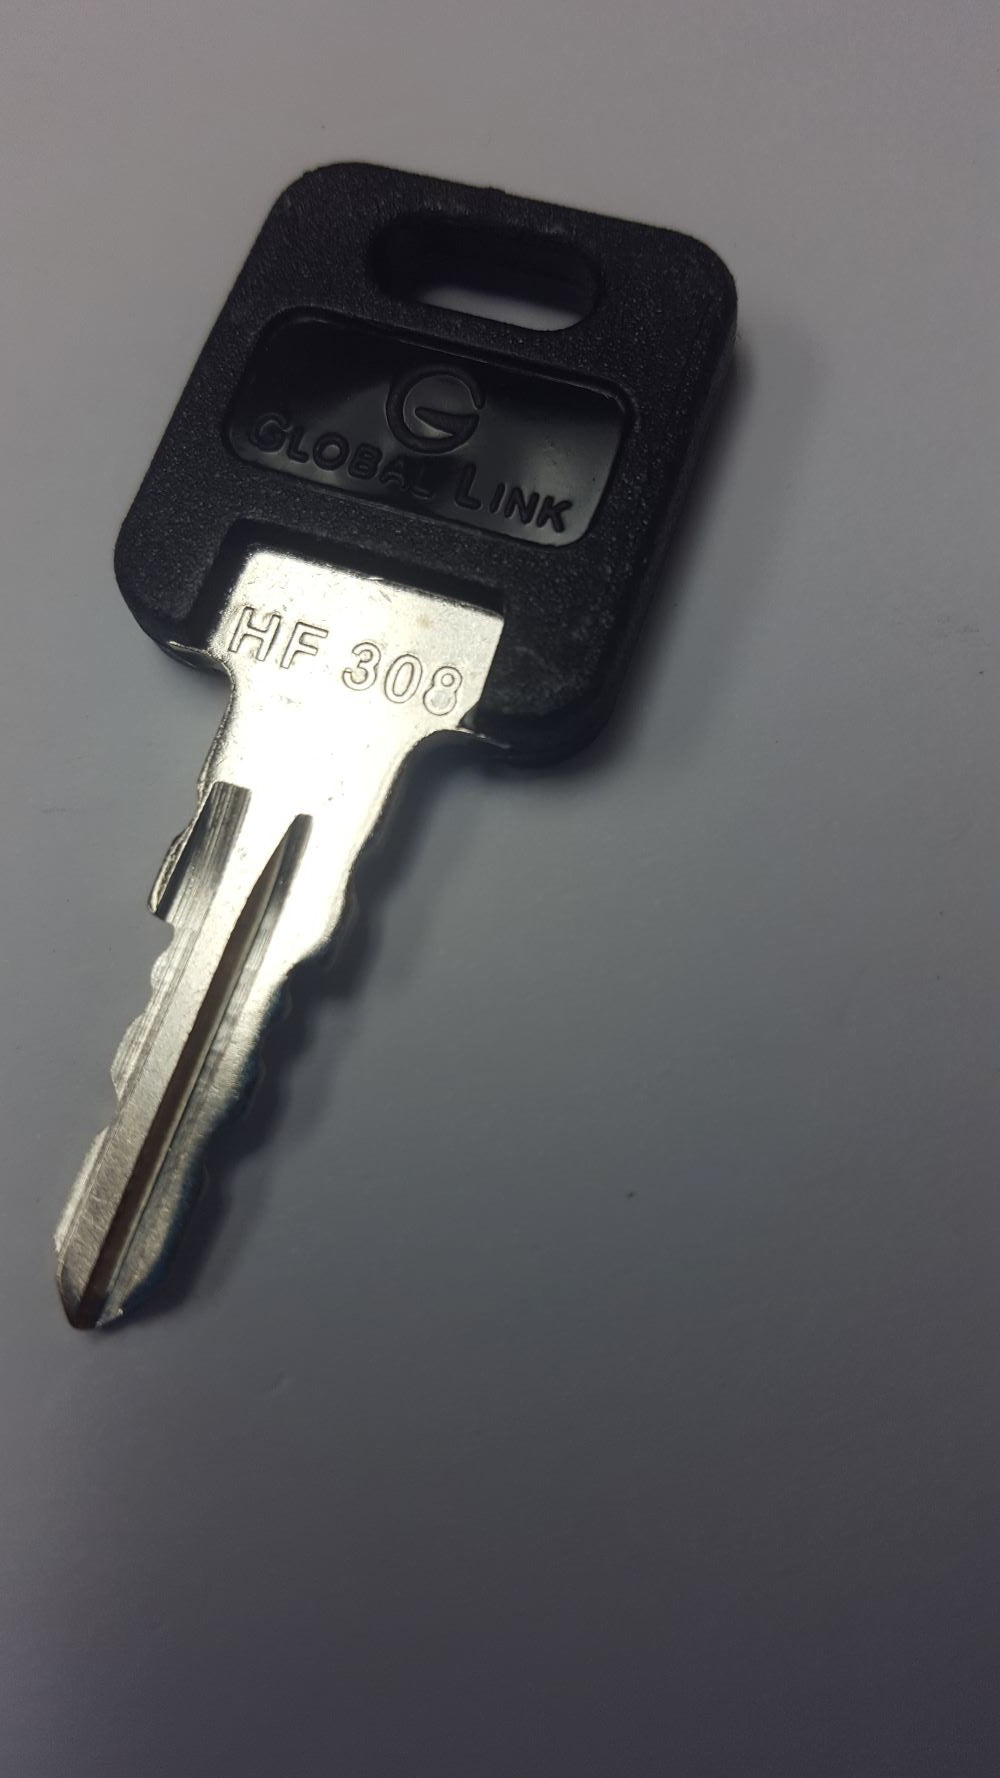 CPG KEY-HF-308 Pre-cut Stamped FIC Replacemnt HF308 Key